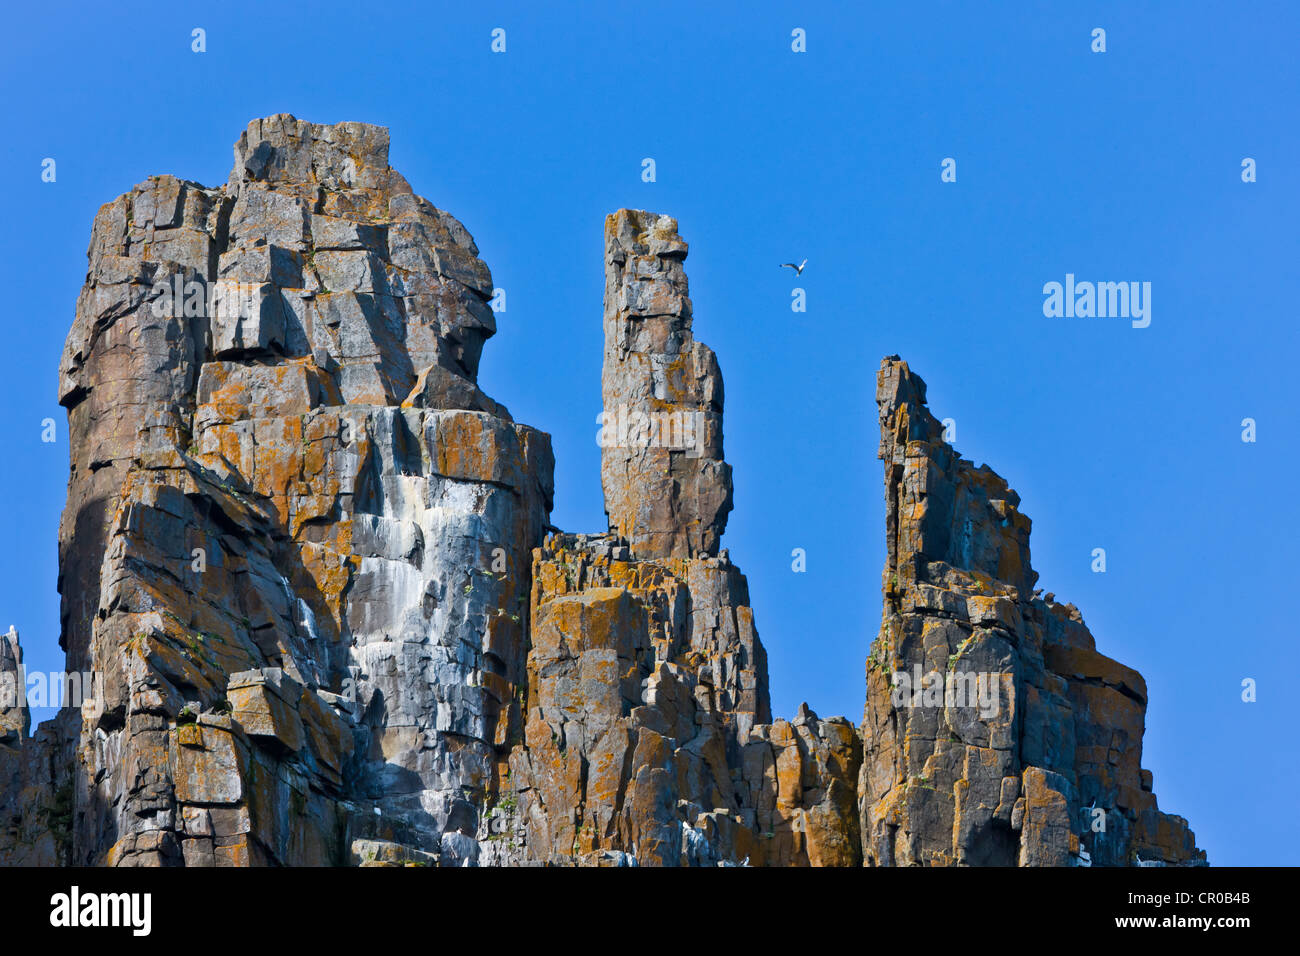 Colonie d'oiseaux à Alkefjellet, falaise de basalte avec animation de 60 000 couples de guillemots de Brünnich, Spitzberg, Norvège Banque D'Images